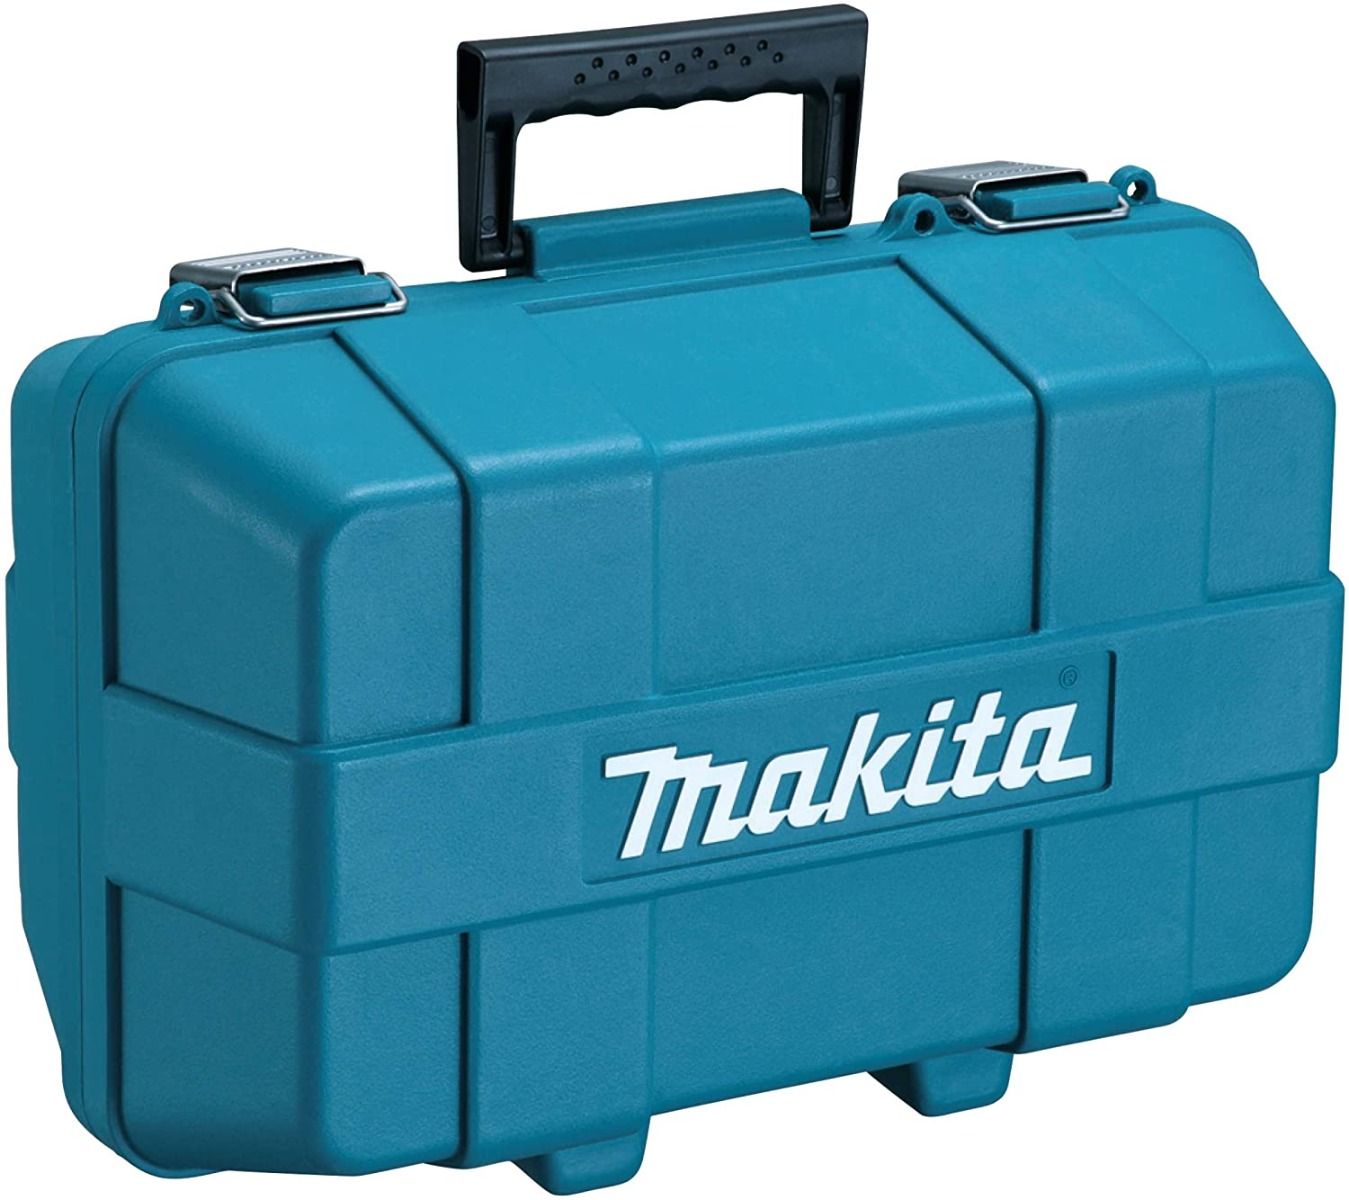 Makita gereedschapskoffer voor lamellenfrees PJ7000